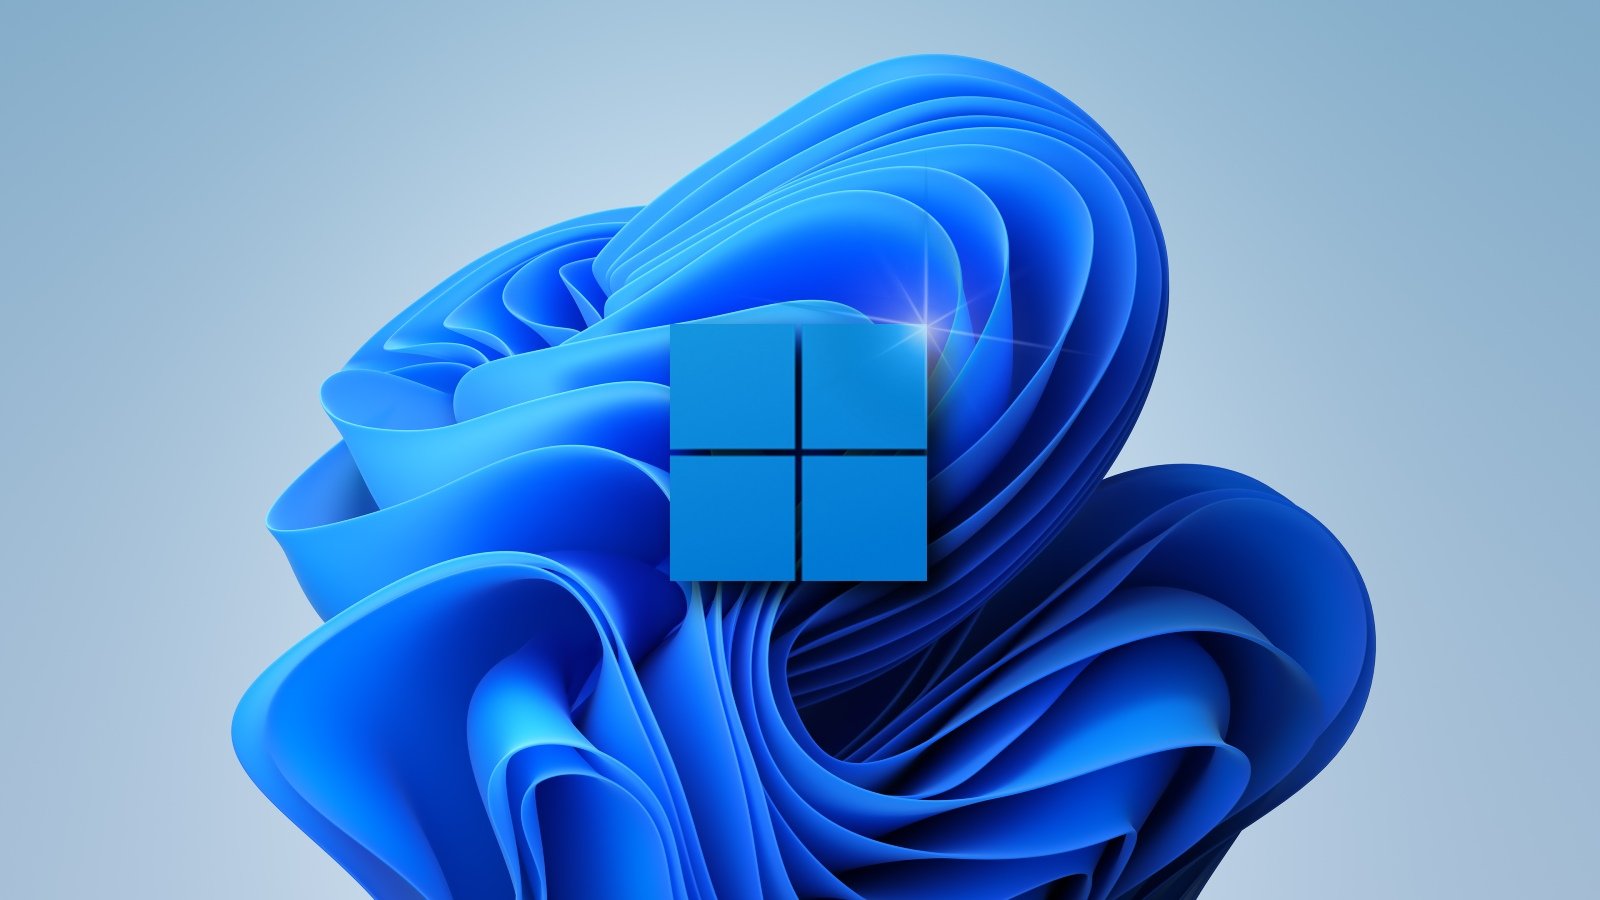 , Τα Windows 11 θα είναι ένα δωρεάν upgrade. Αποκτήστε σήμερα Windows 10 με €7.99